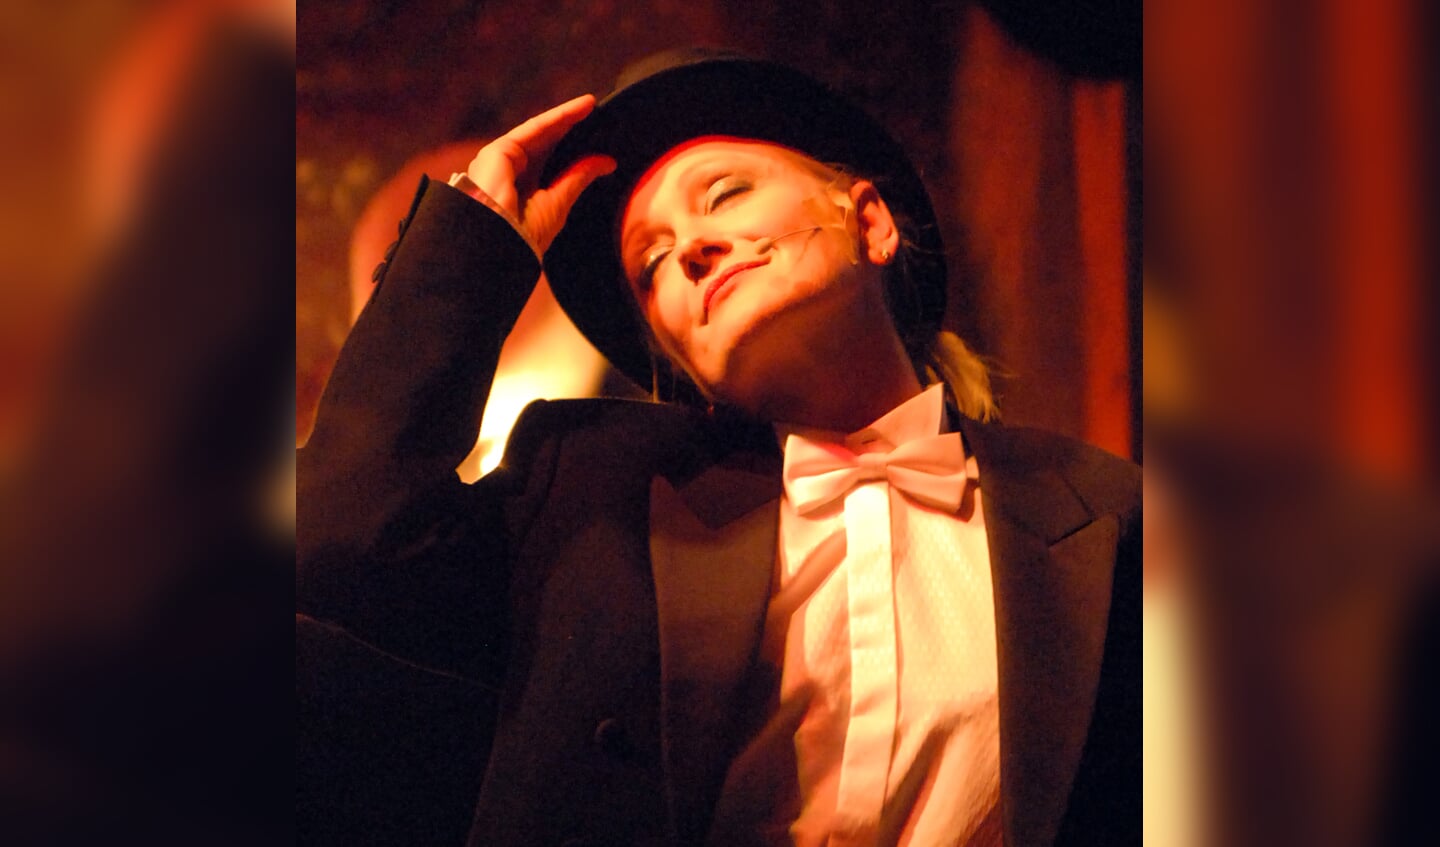 Wilma Bakker als Marlene Dietrich.